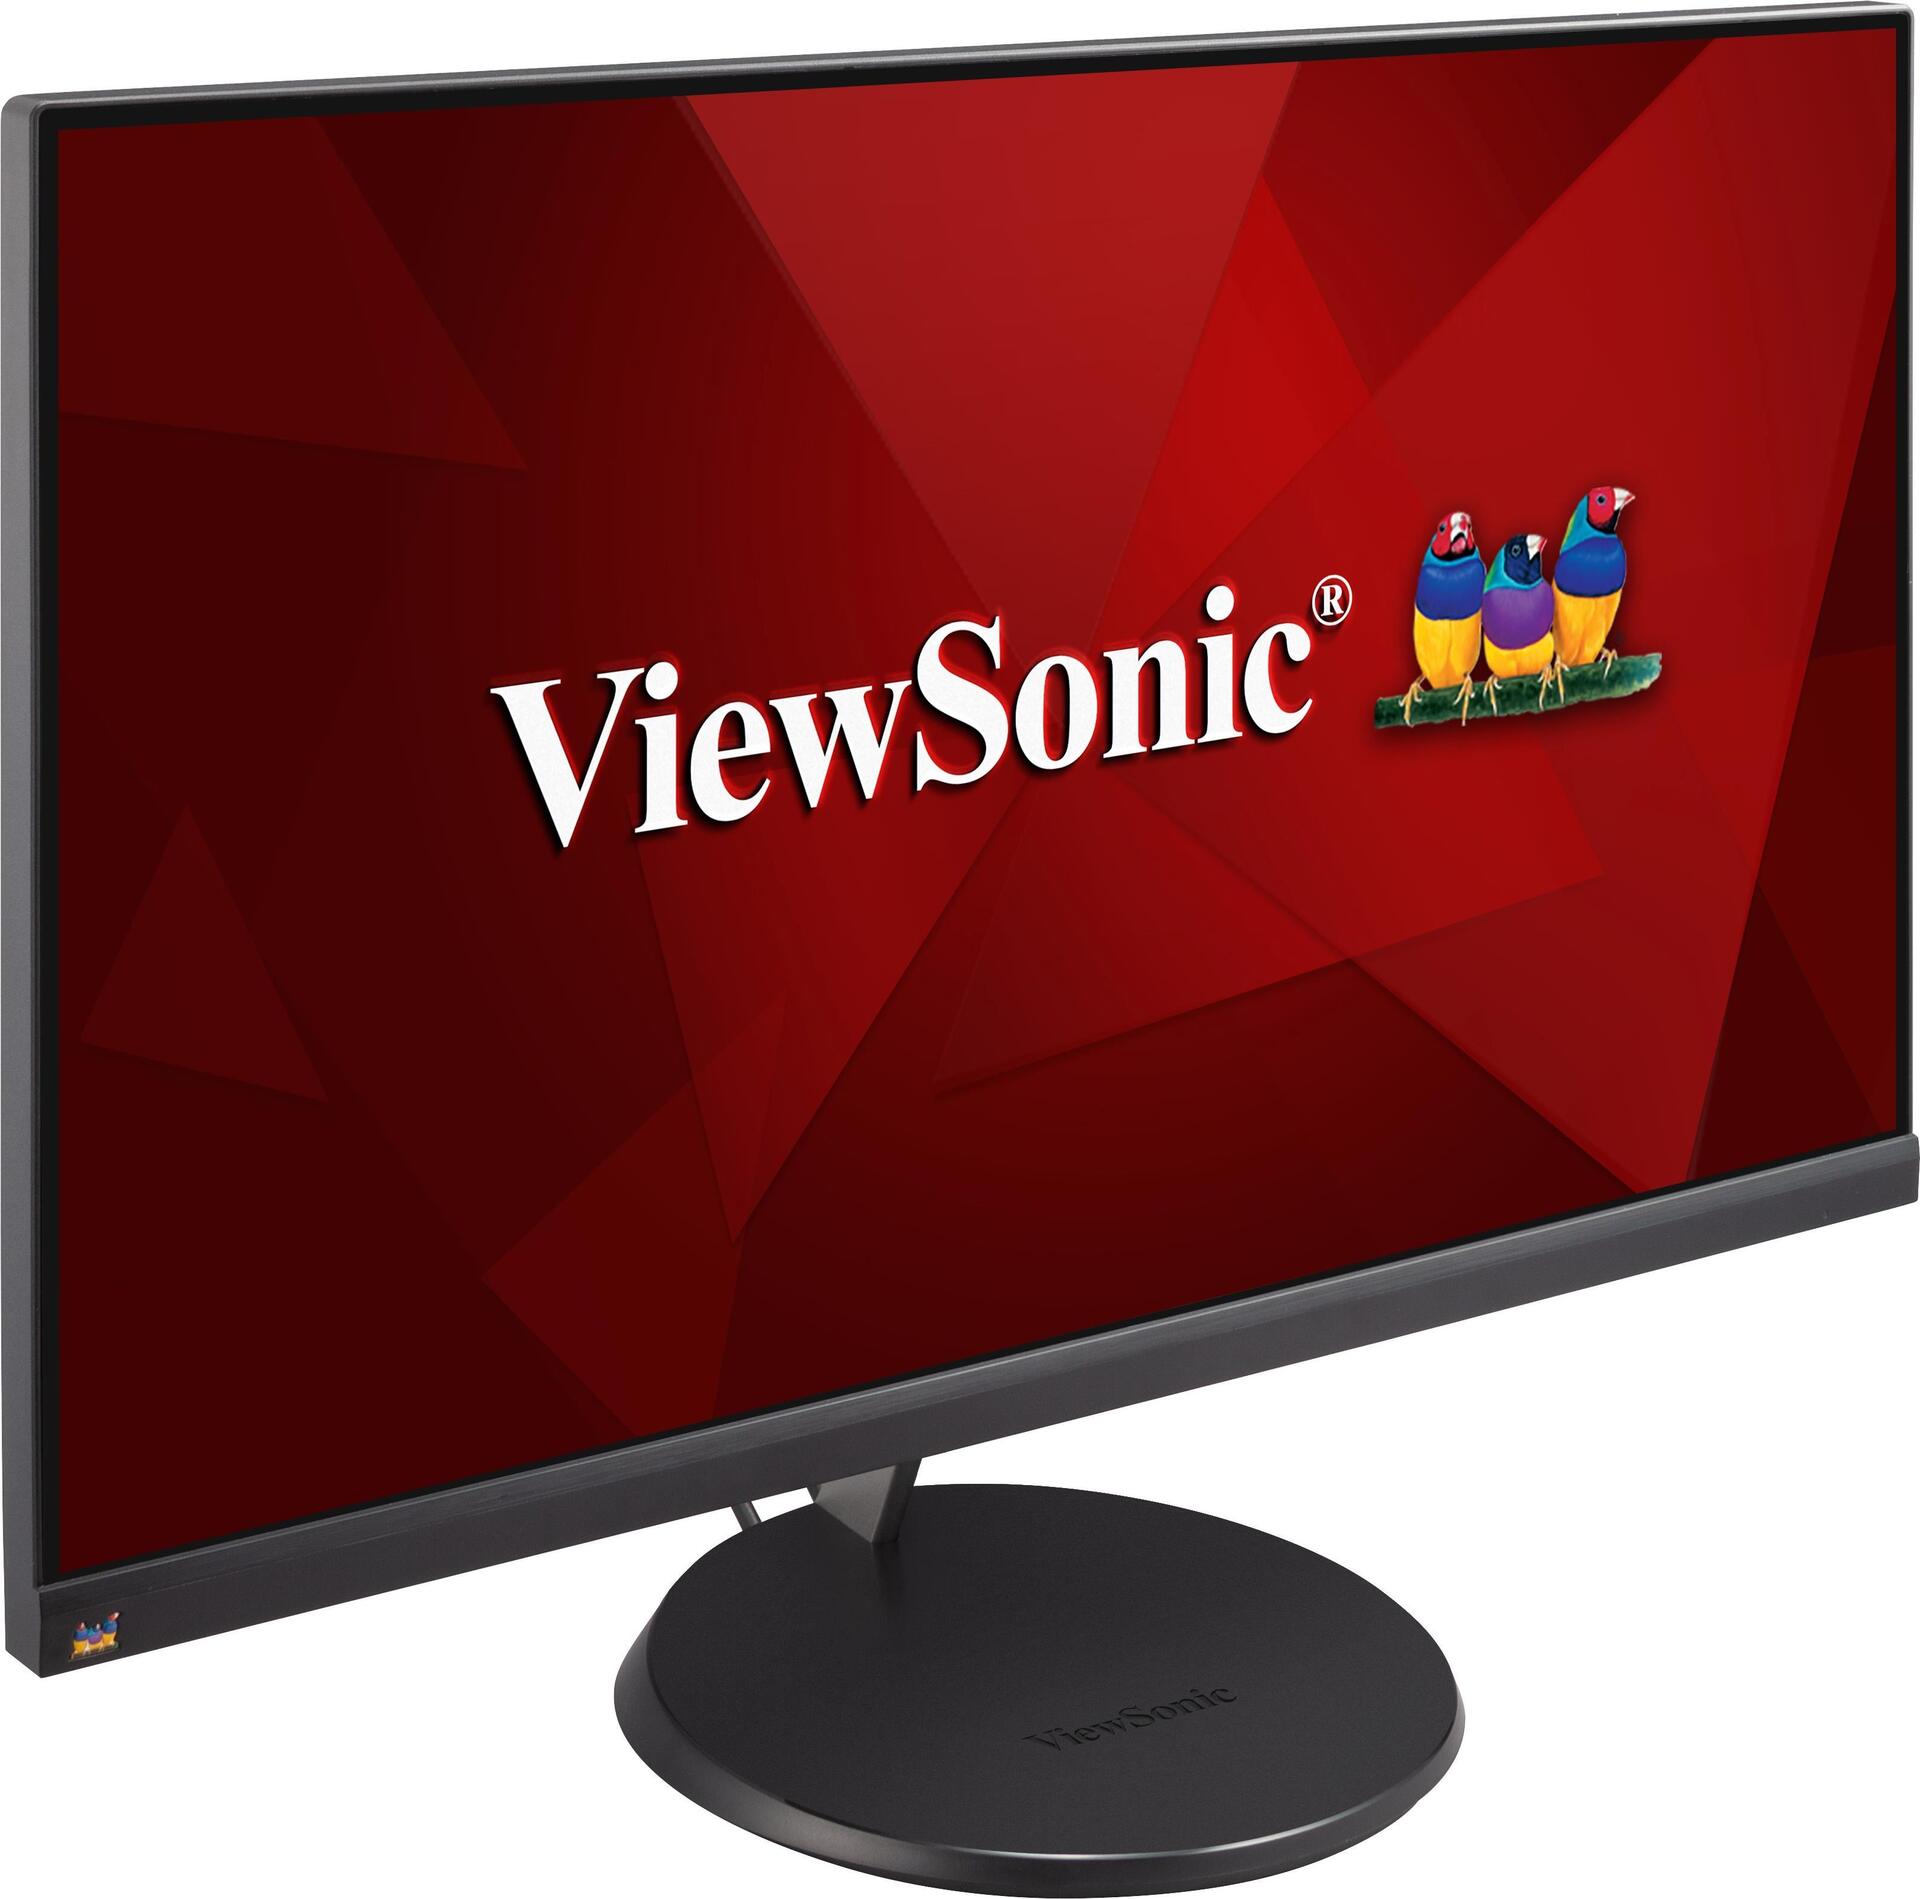 Viewsonic VX Series VX2485-MHU LED display 61 cm (24" ) 1920 x 1080 Pixel Full HD Schwarz (VX2485-MHU)